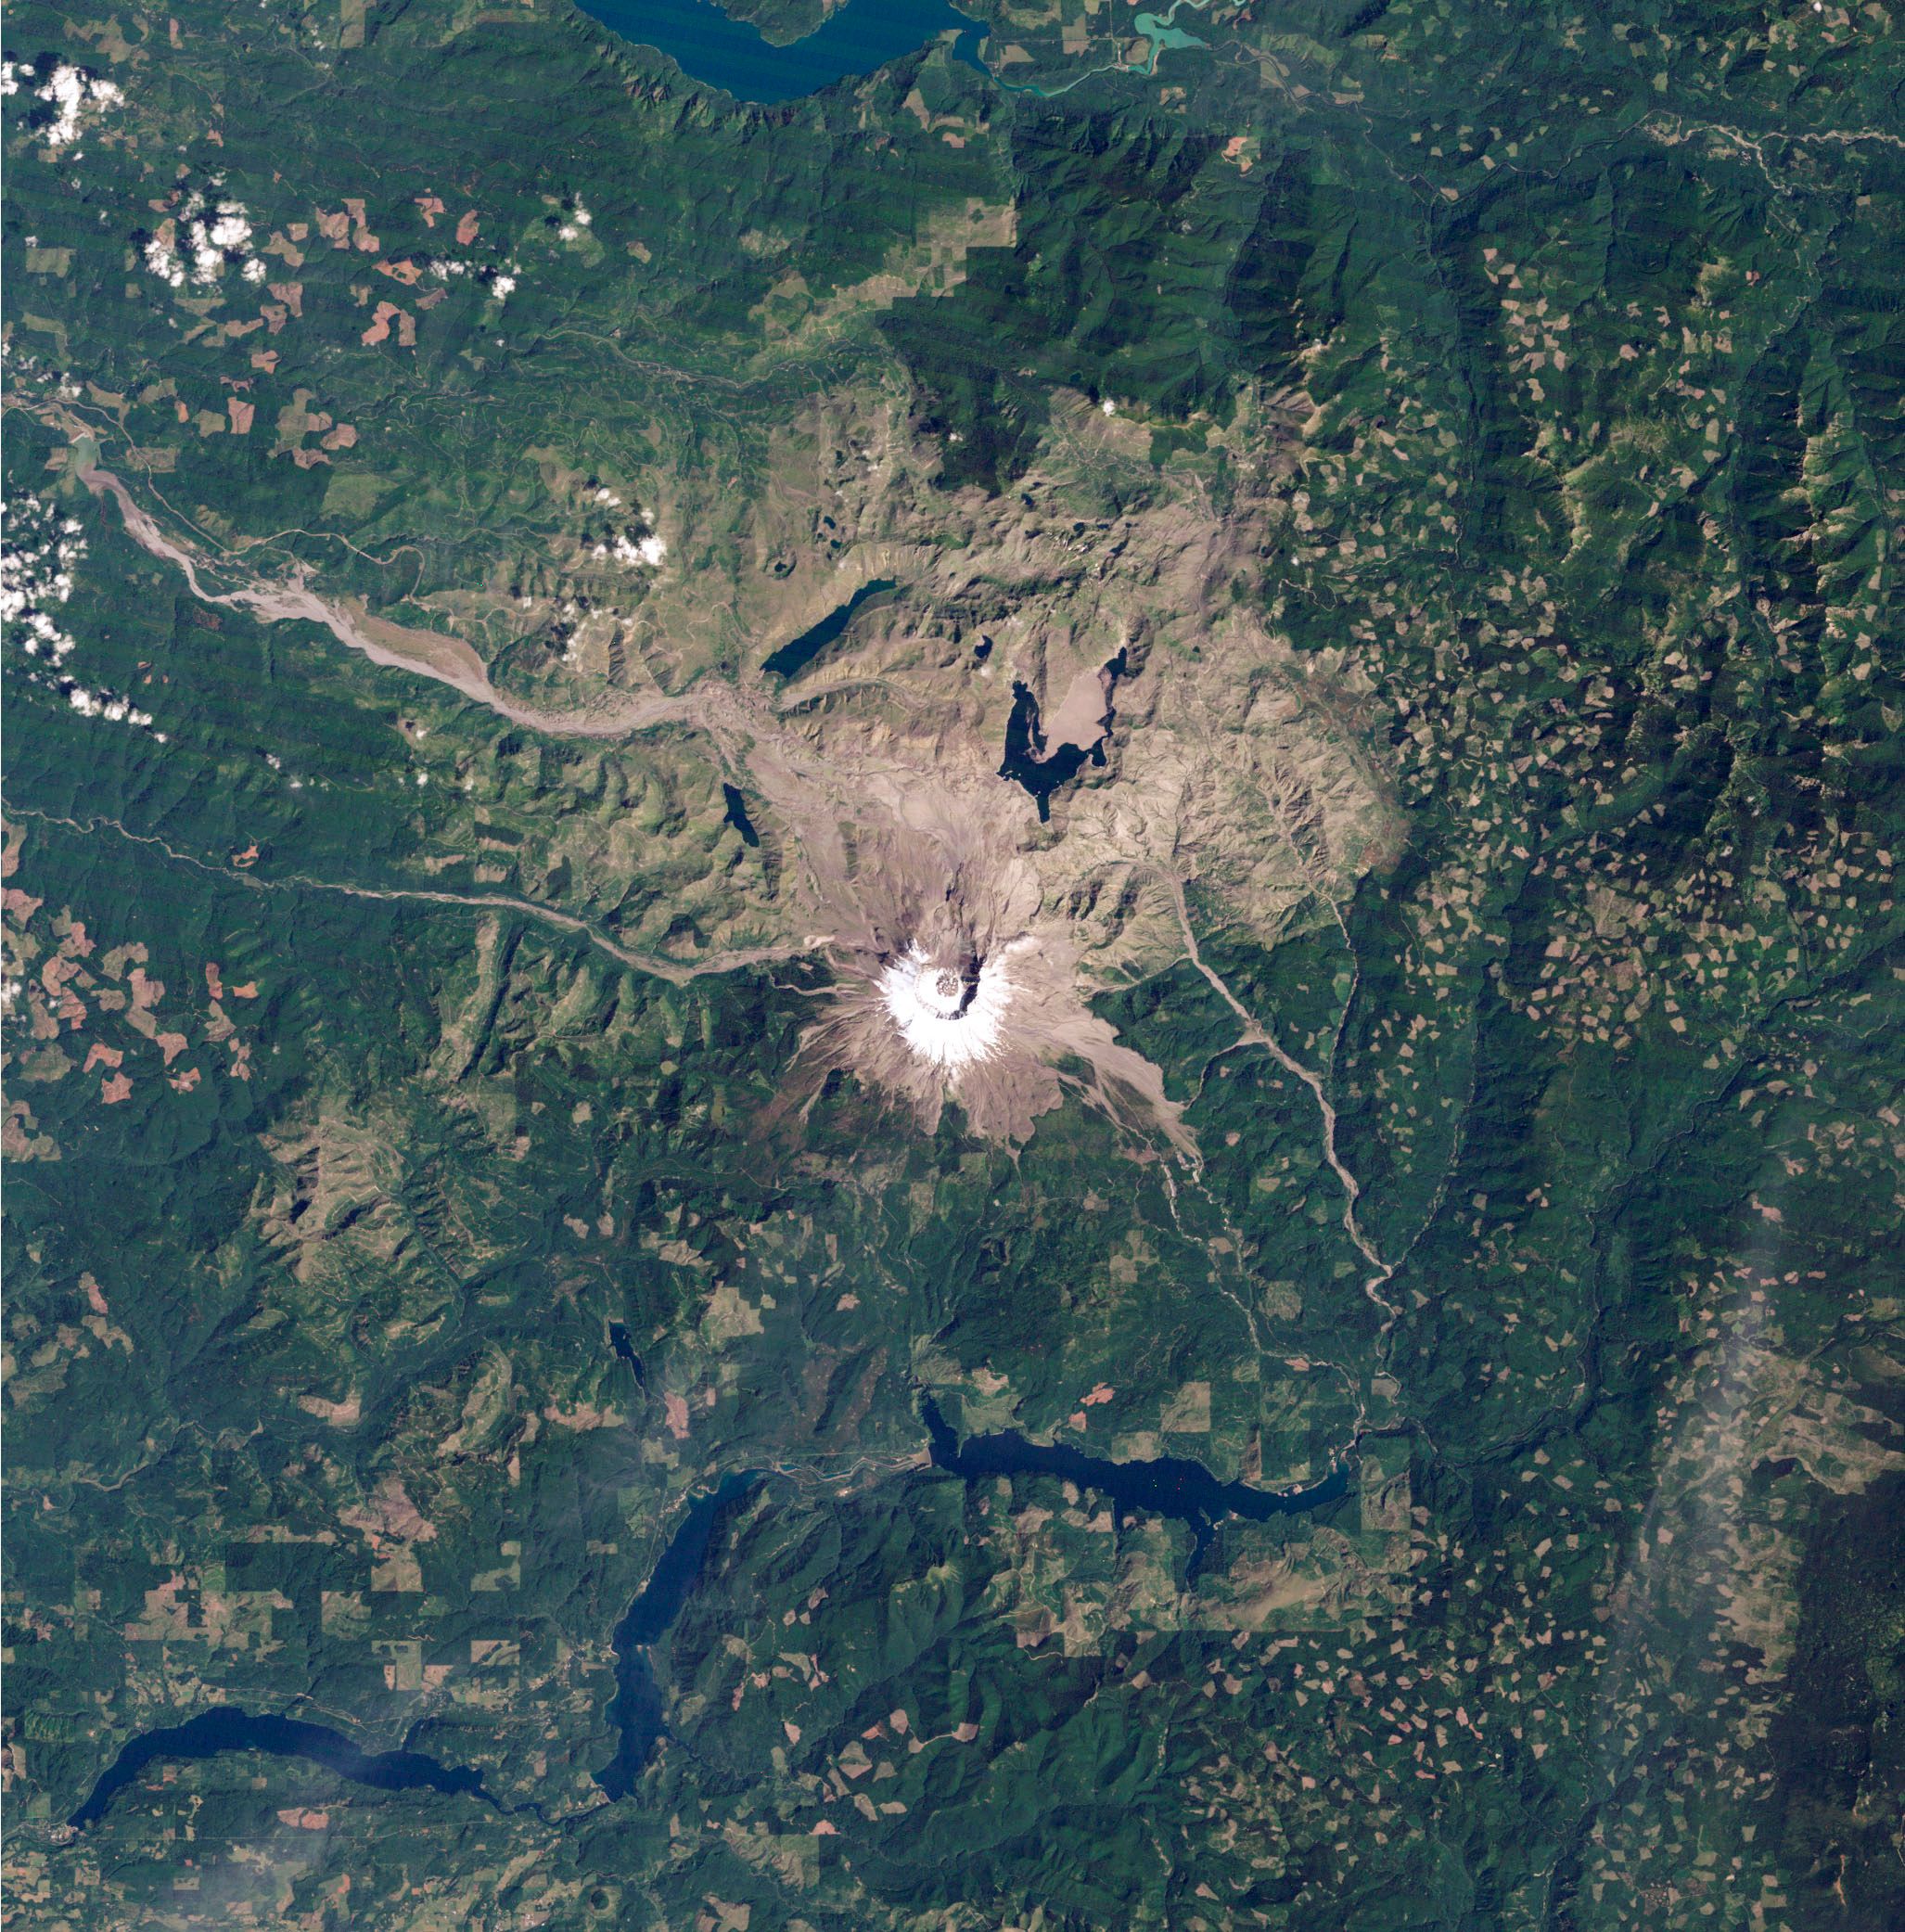 Eine Satelliten-Aufnahme zeigt den schneebedeckten Krater des Mount St. Helens, sowie seine grau-braune Vulkanlandschaft und eine grüne Umgebung.